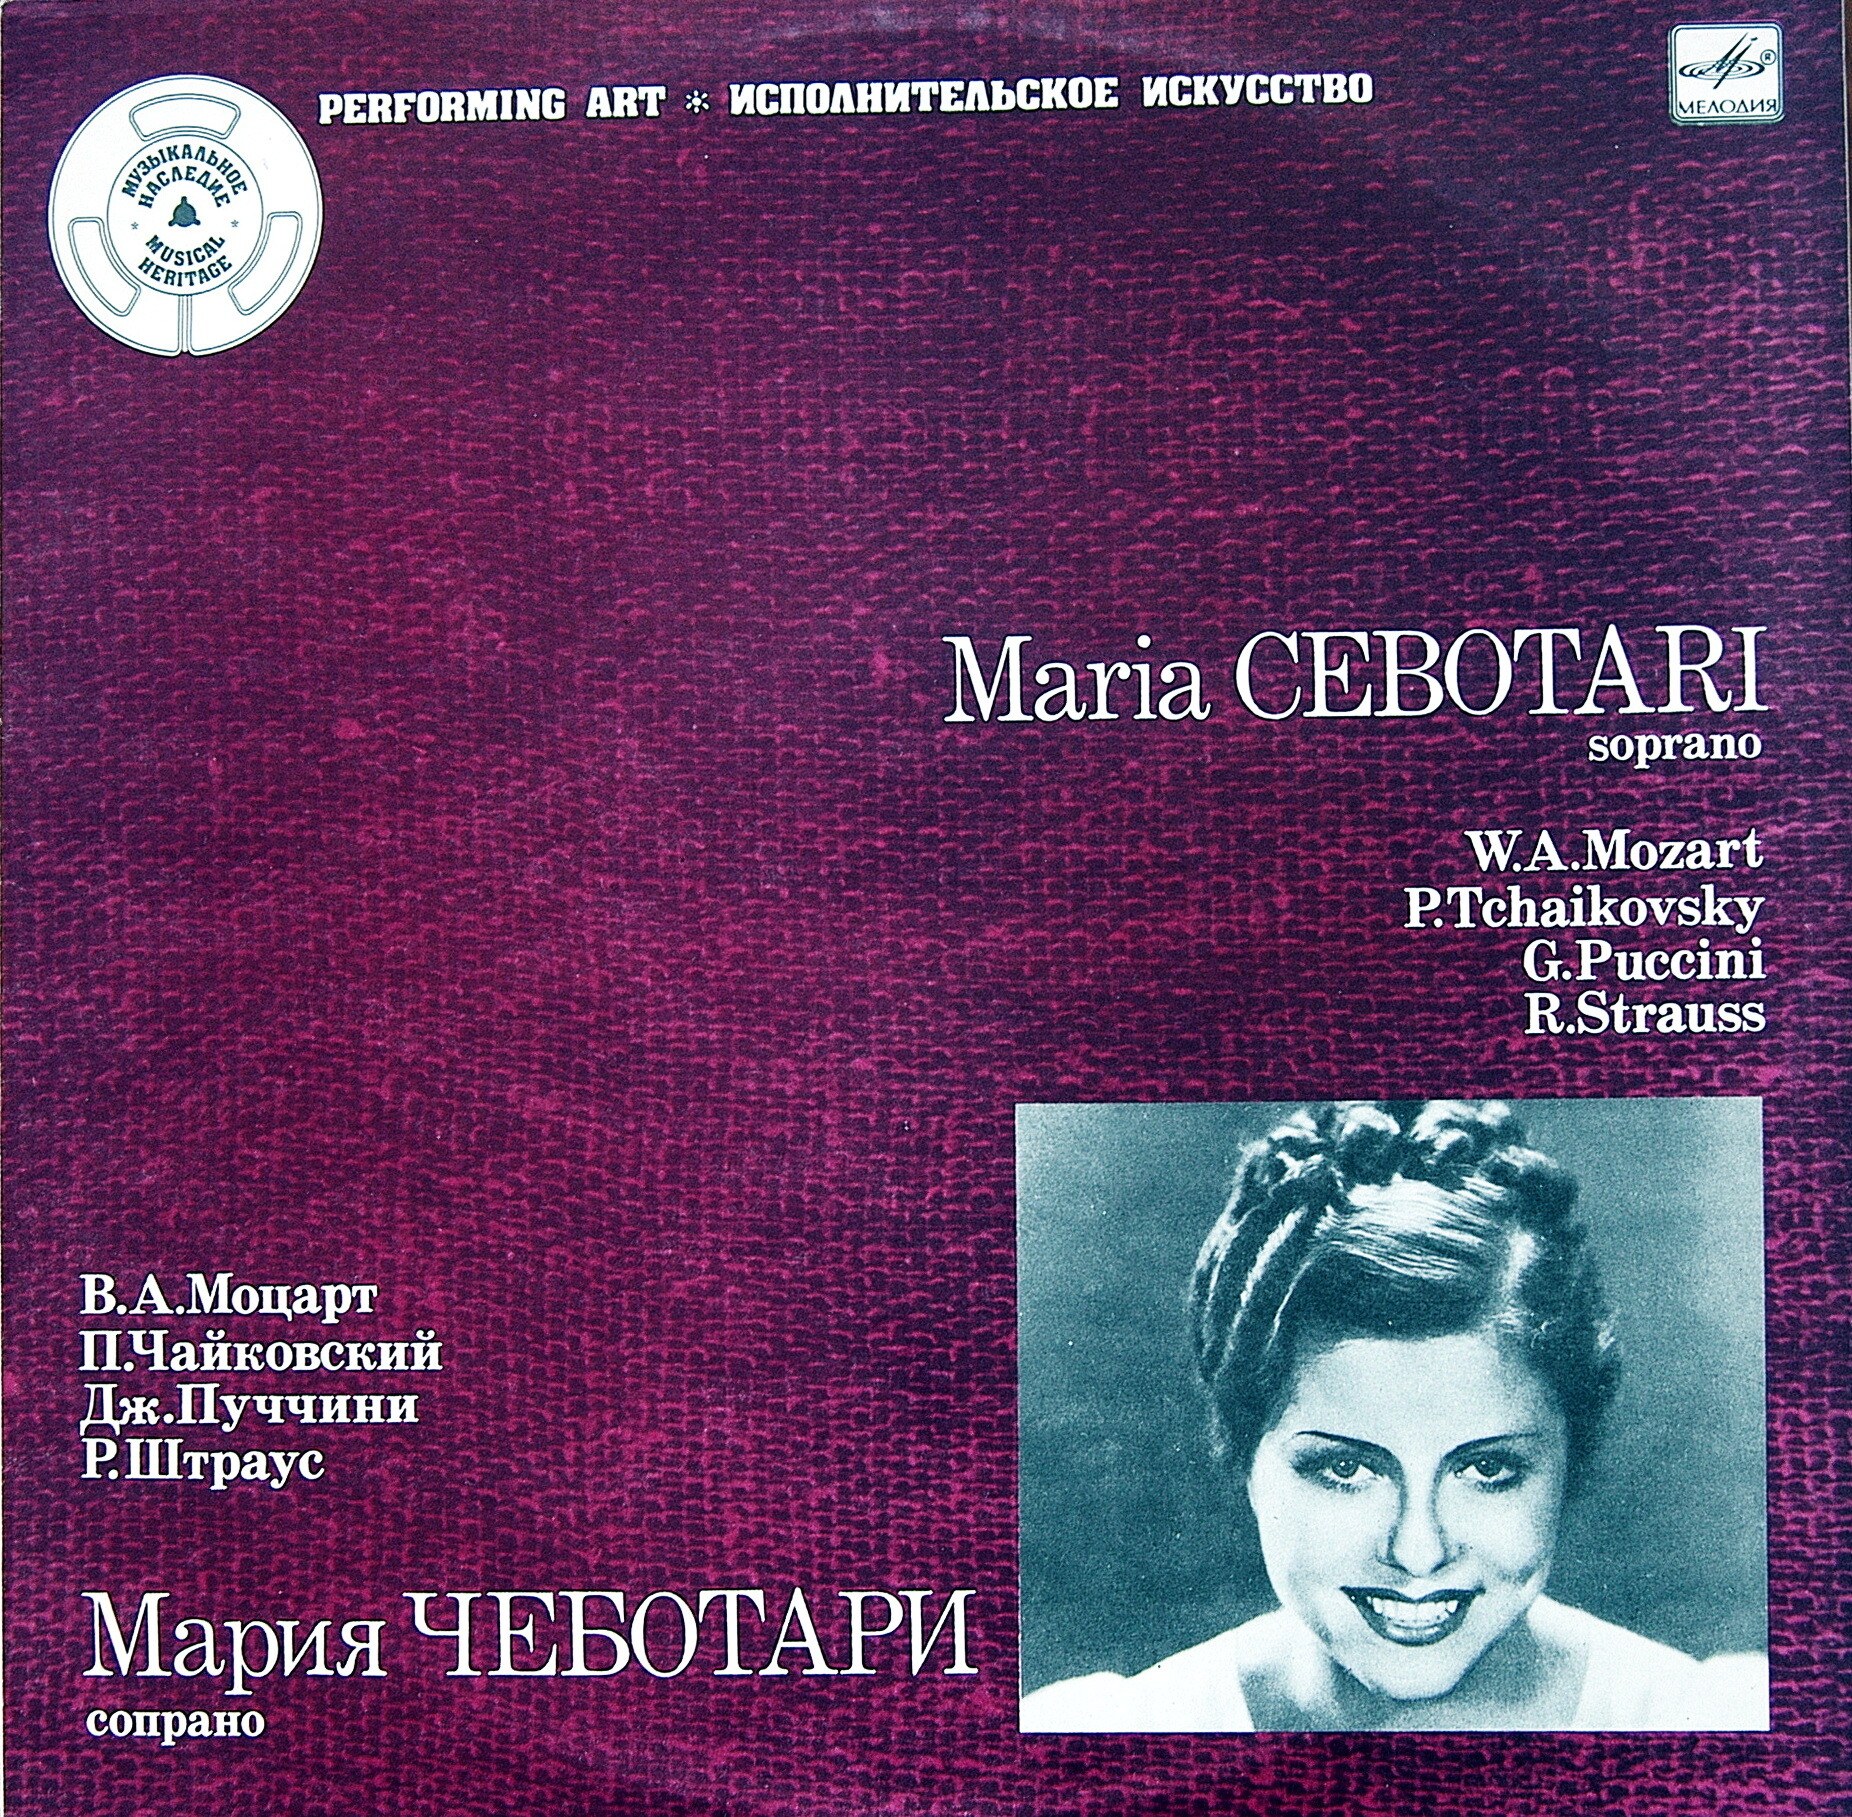 ЧЕБОТАРИ Мария (сопрано).